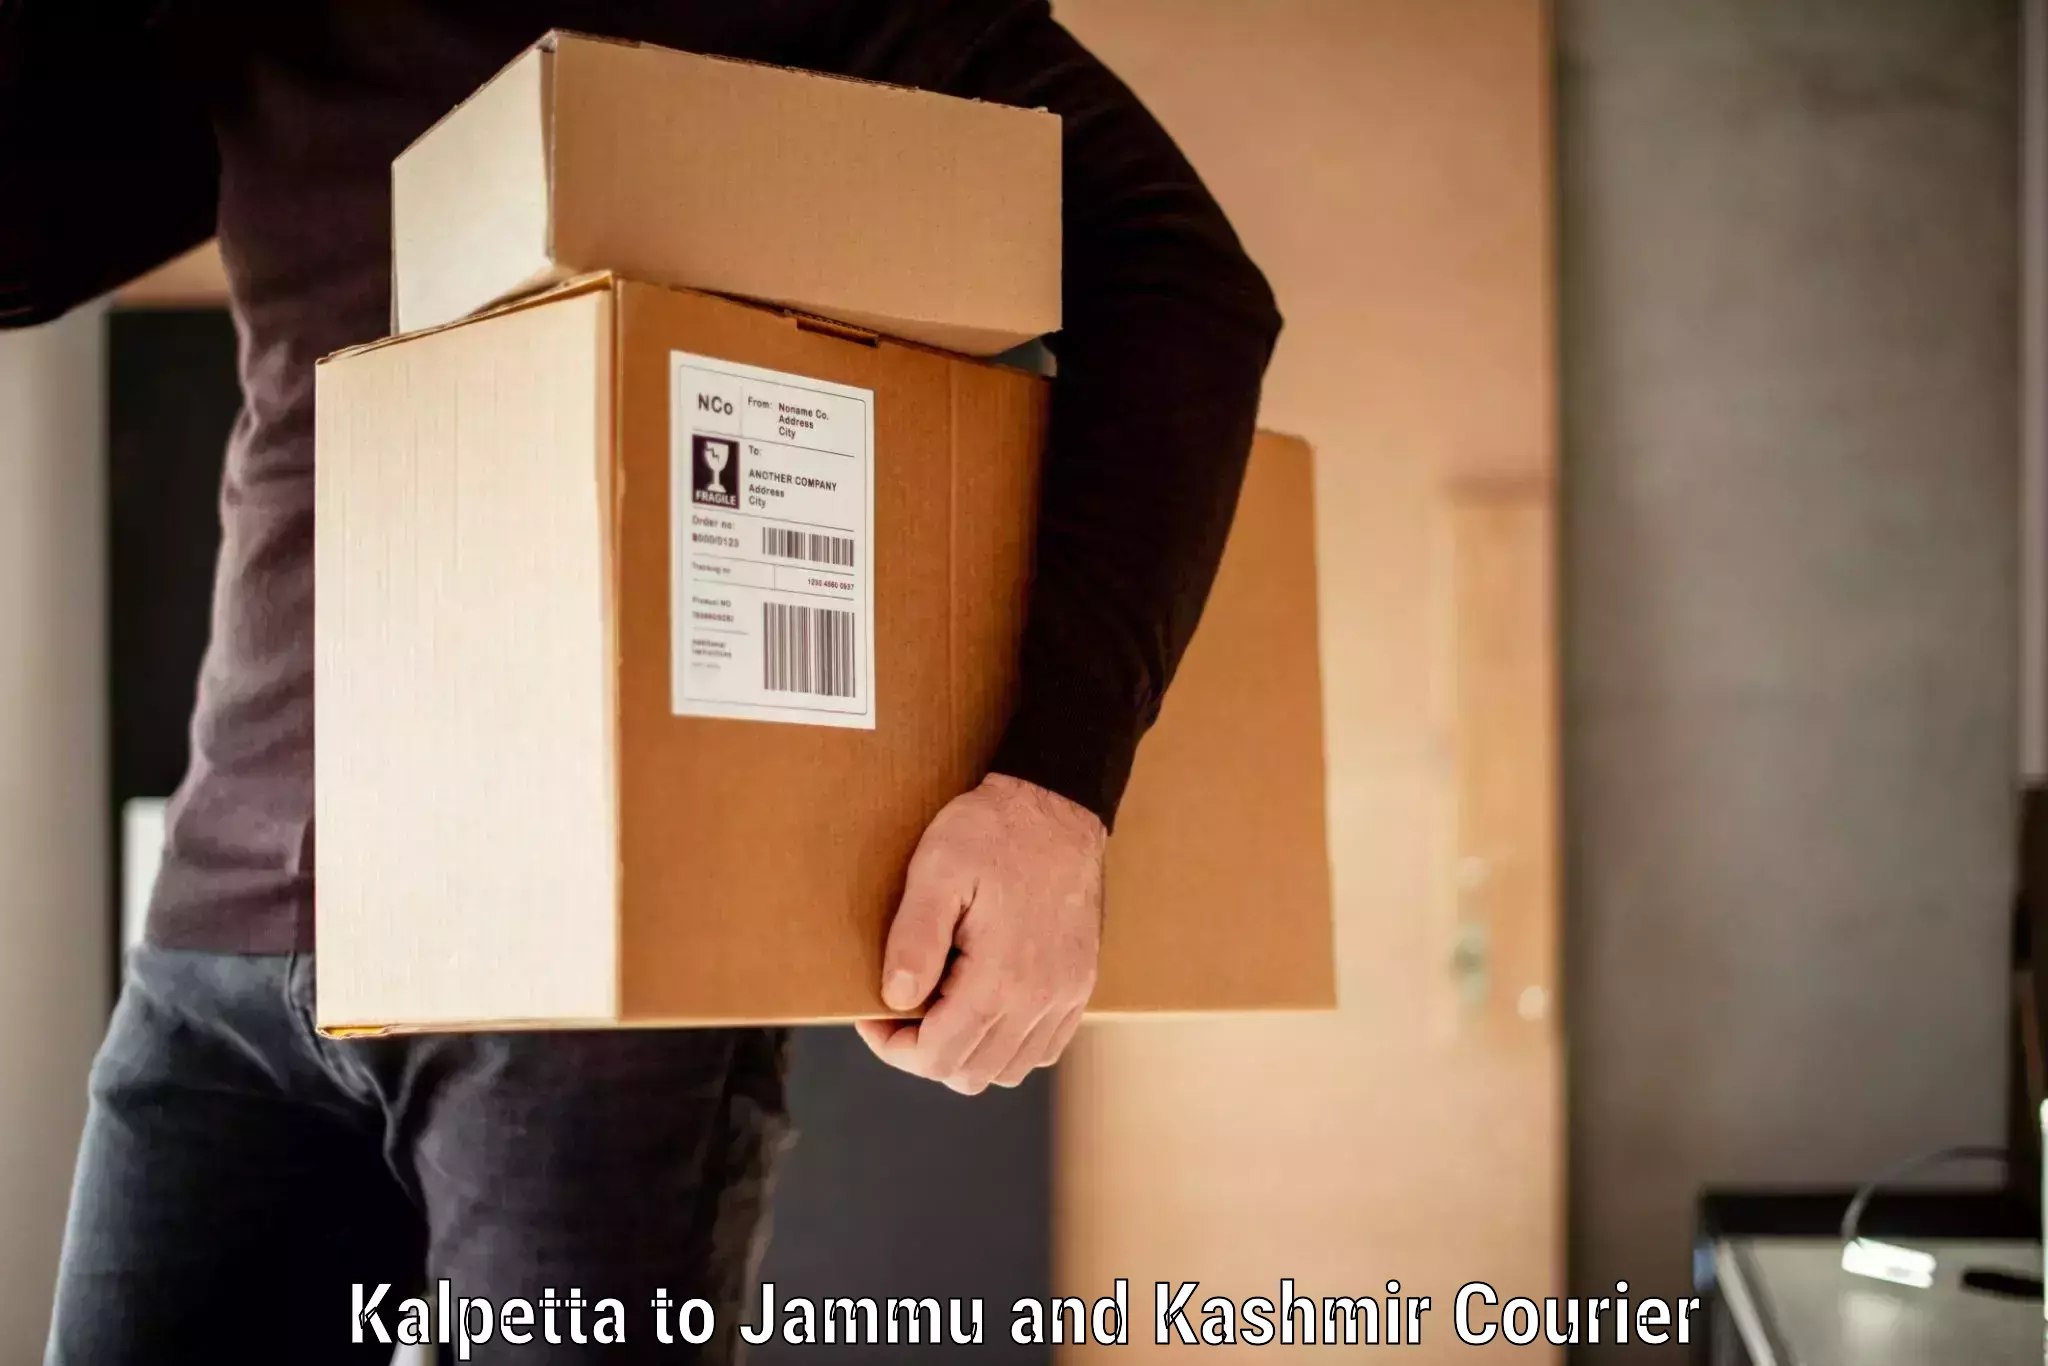 Baggage shipping service Kalpetta to Jammu and Kashmir